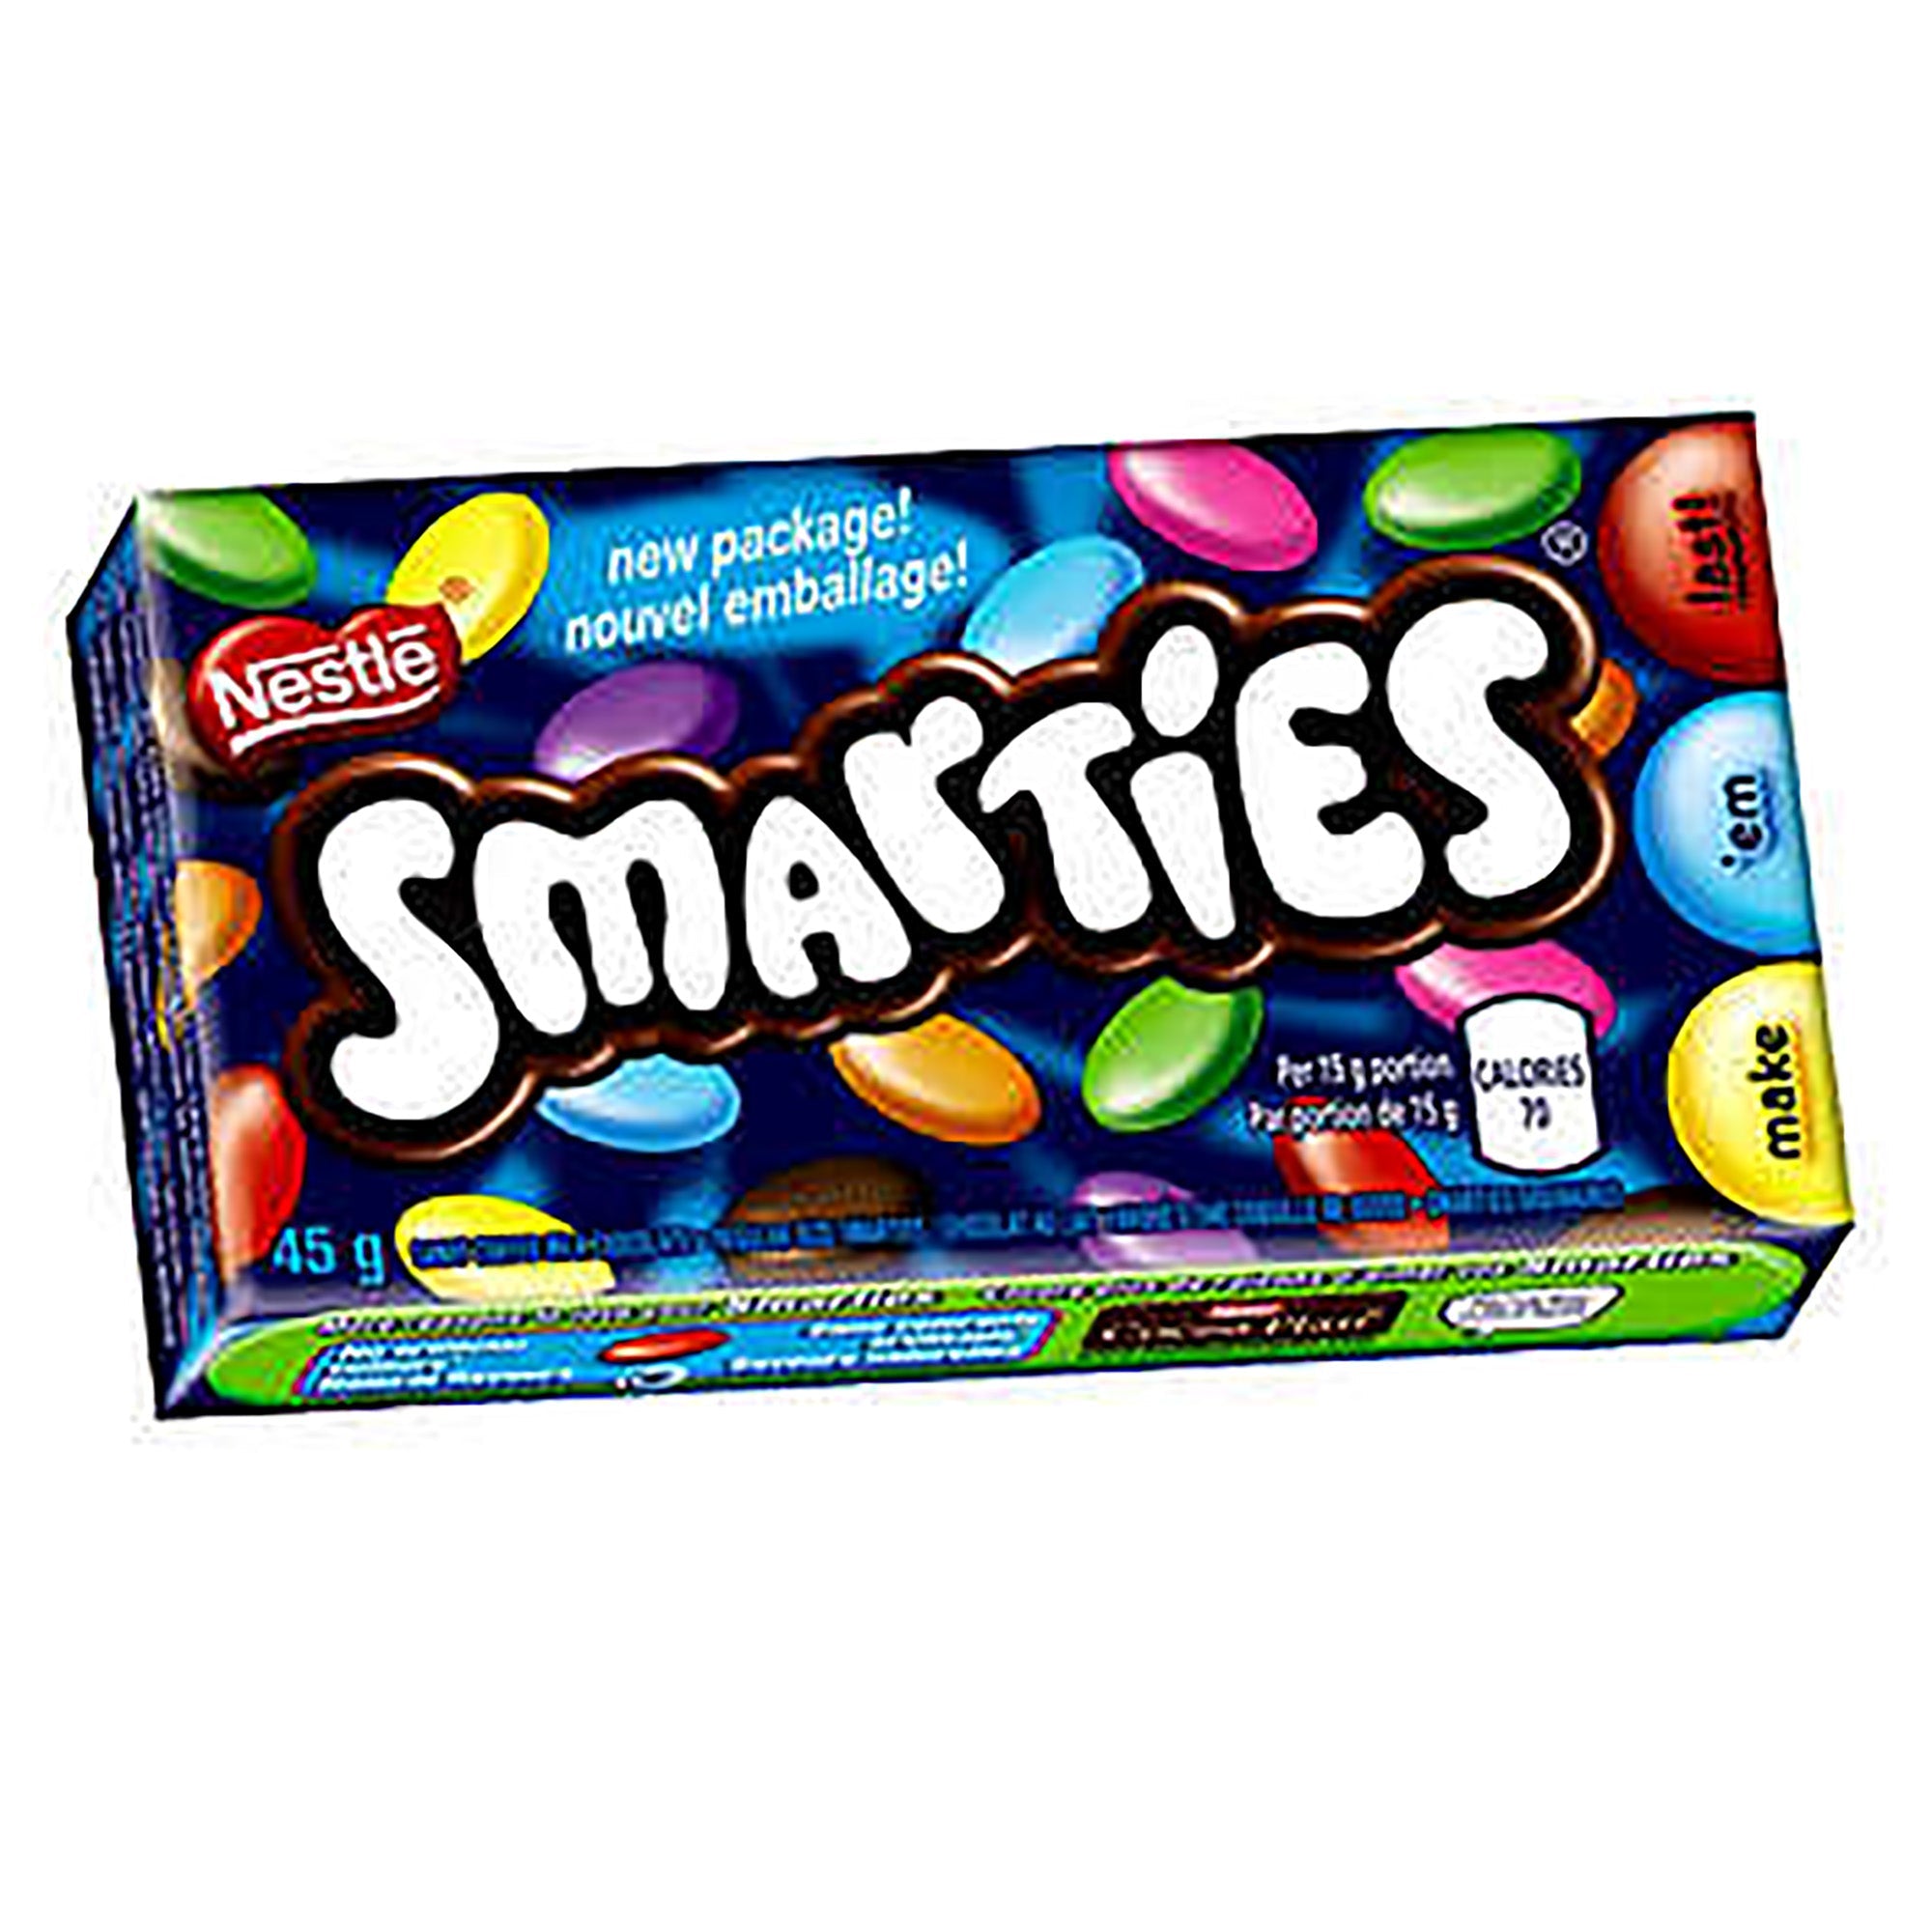 Nestlé Smarties Original 45g